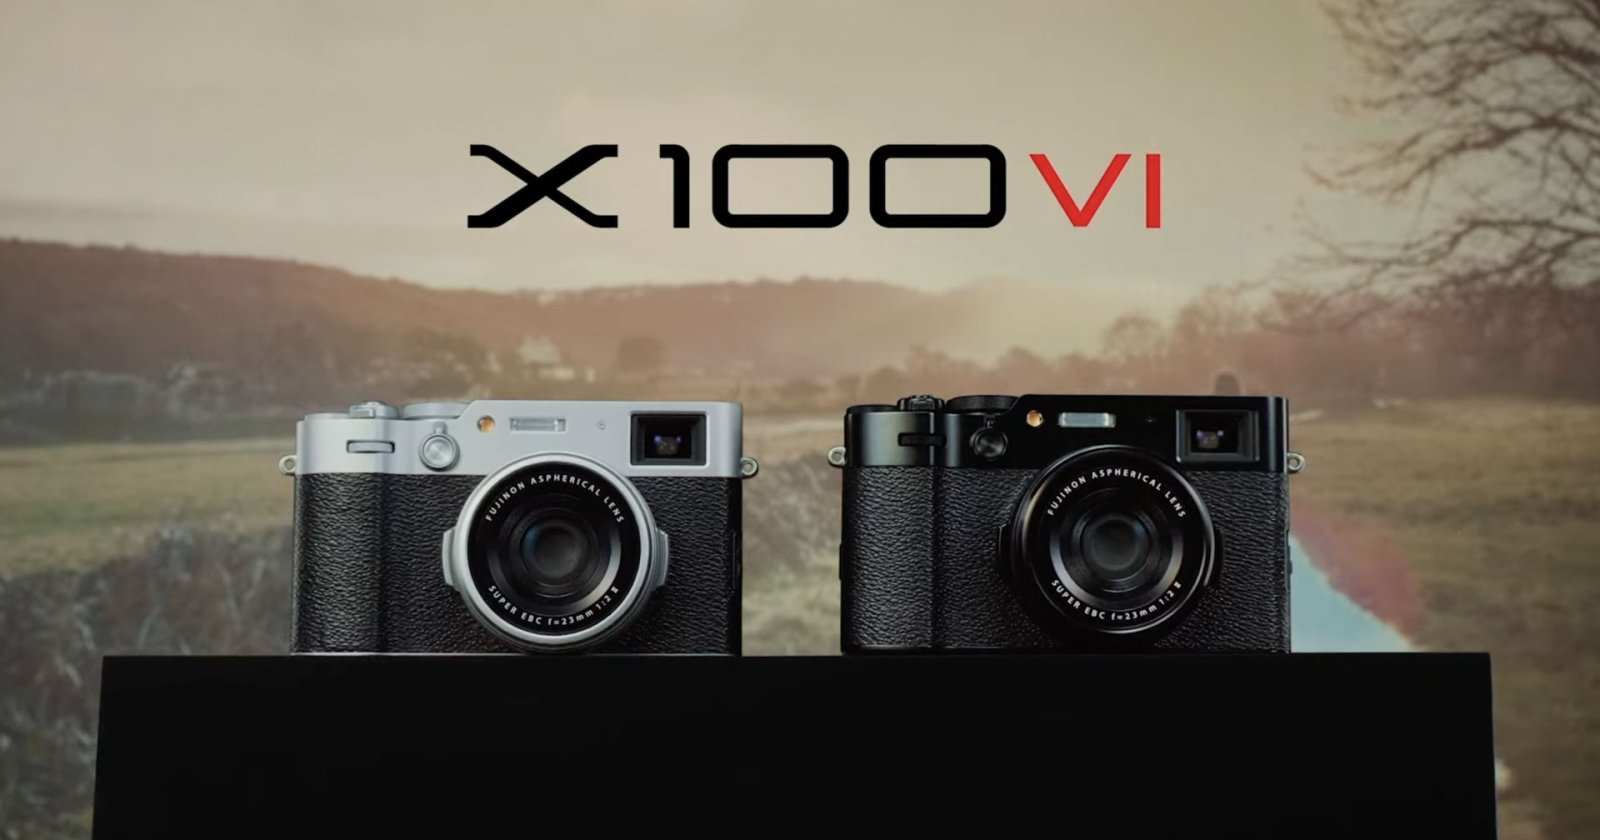 มาแล้ว! FUJIFILM X100VI กล้อง Compact Rangefinder ดีไซน์คลาสสิก เซนเซอร์ใหม่ 40.2MP พร้อมกันสั่น 5 แกน